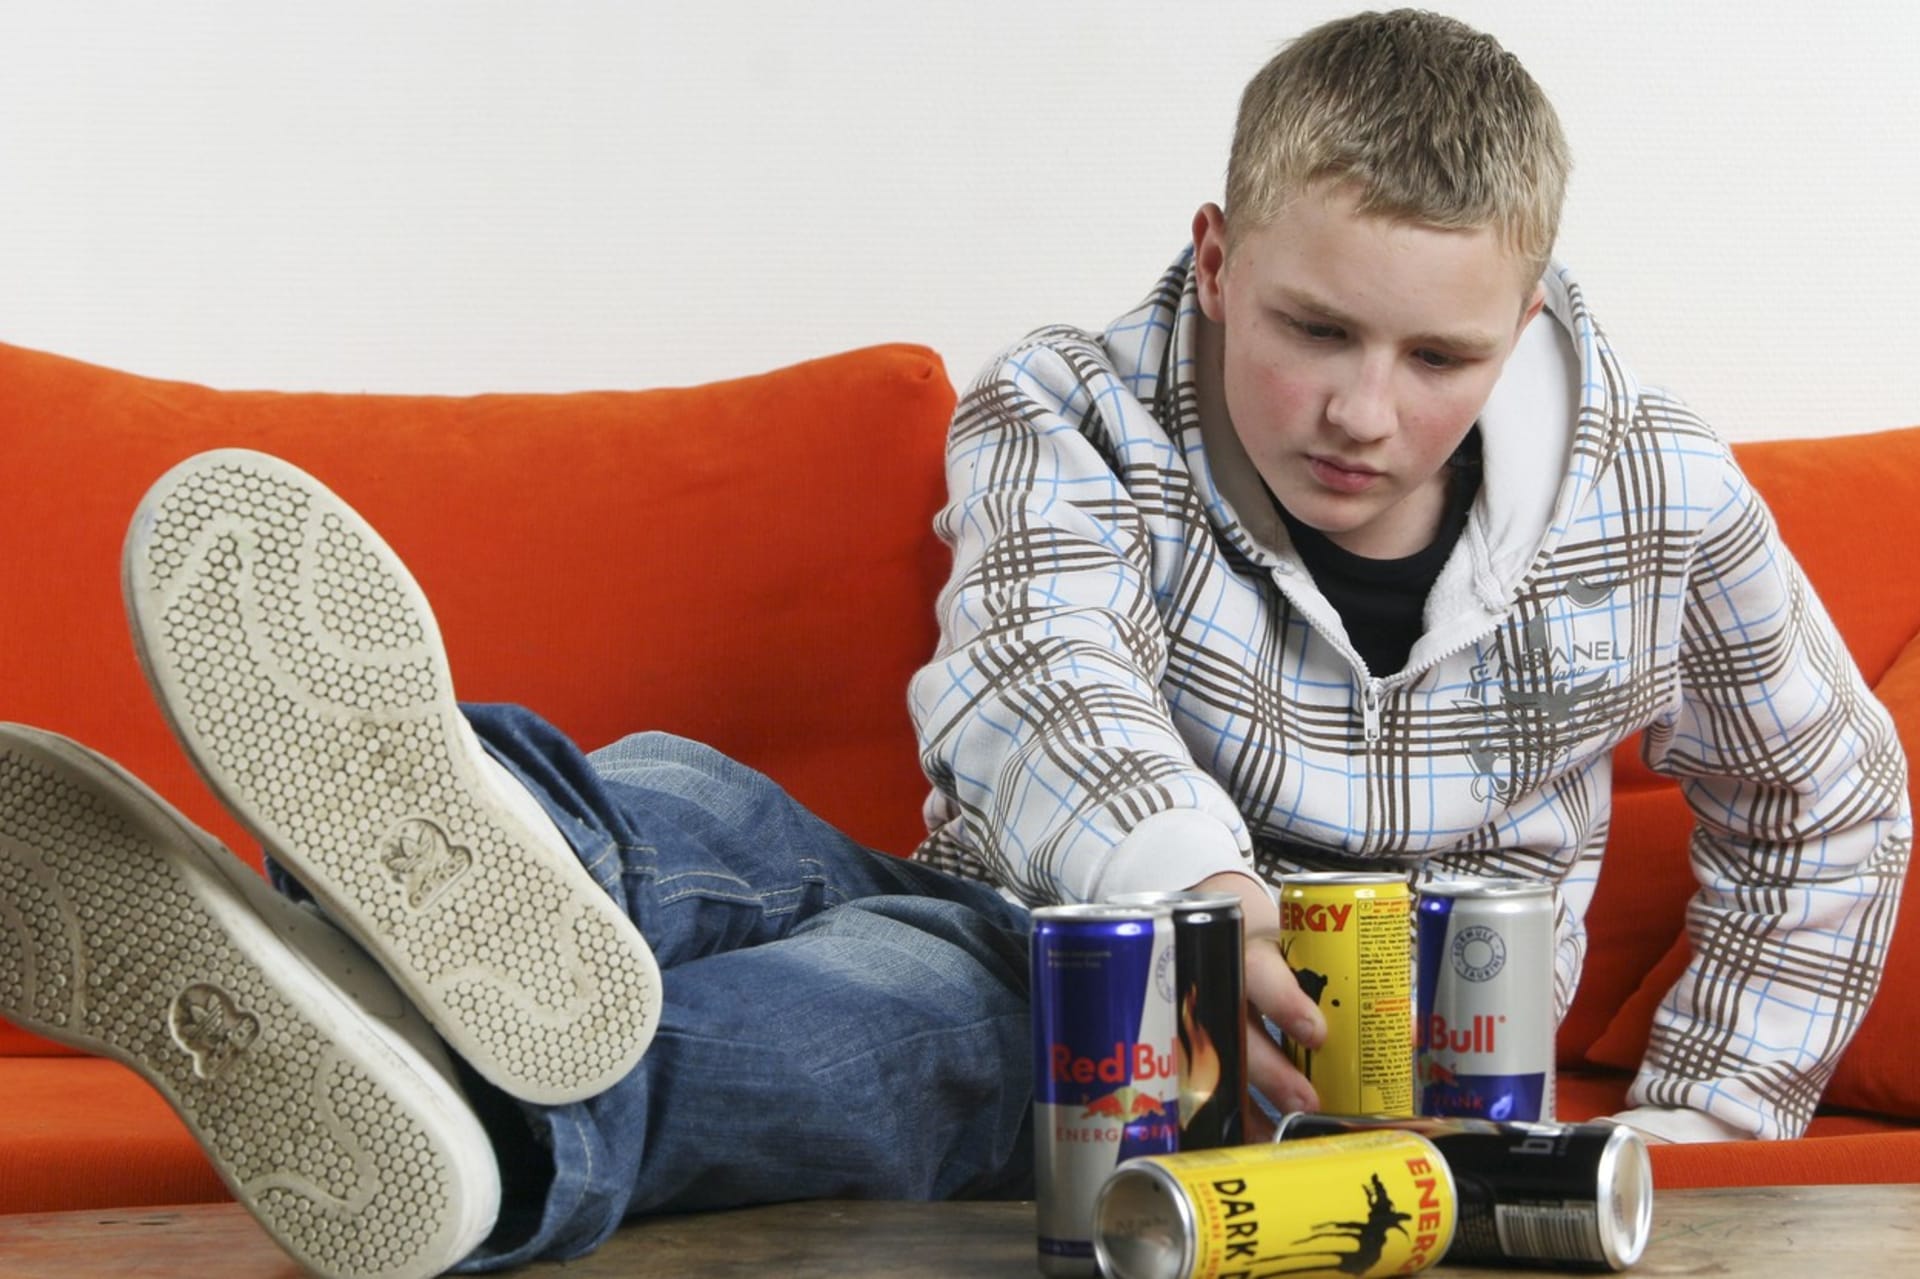 Například v Litvě a Lotyšsku už je prodej energetických nápojů dětem zakázán. V Česku se zatím diskutuje.